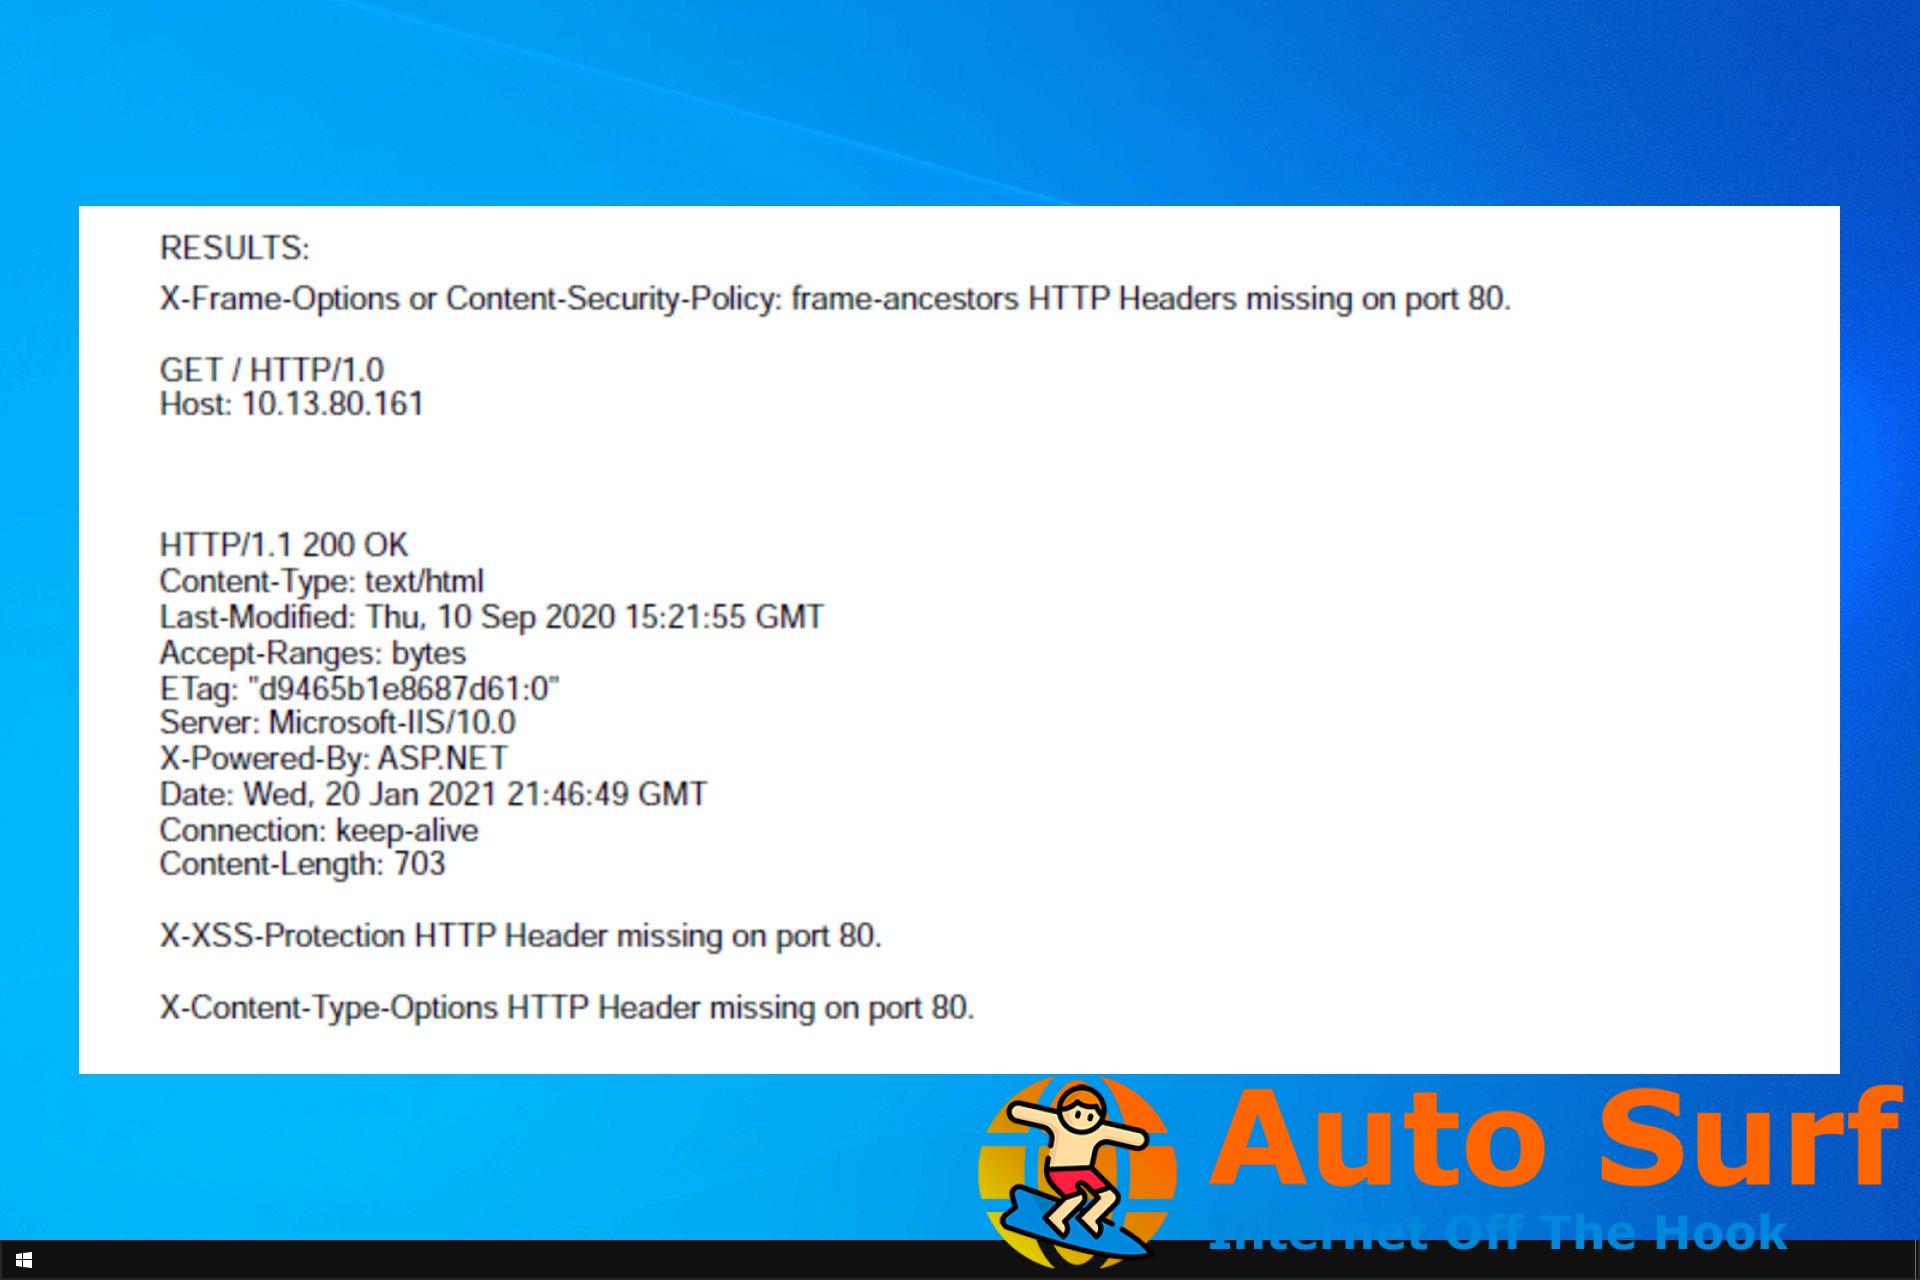 ¿No se detectó el encabezado de seguridad HTTP? Aquí hay 4 grandes arreglos